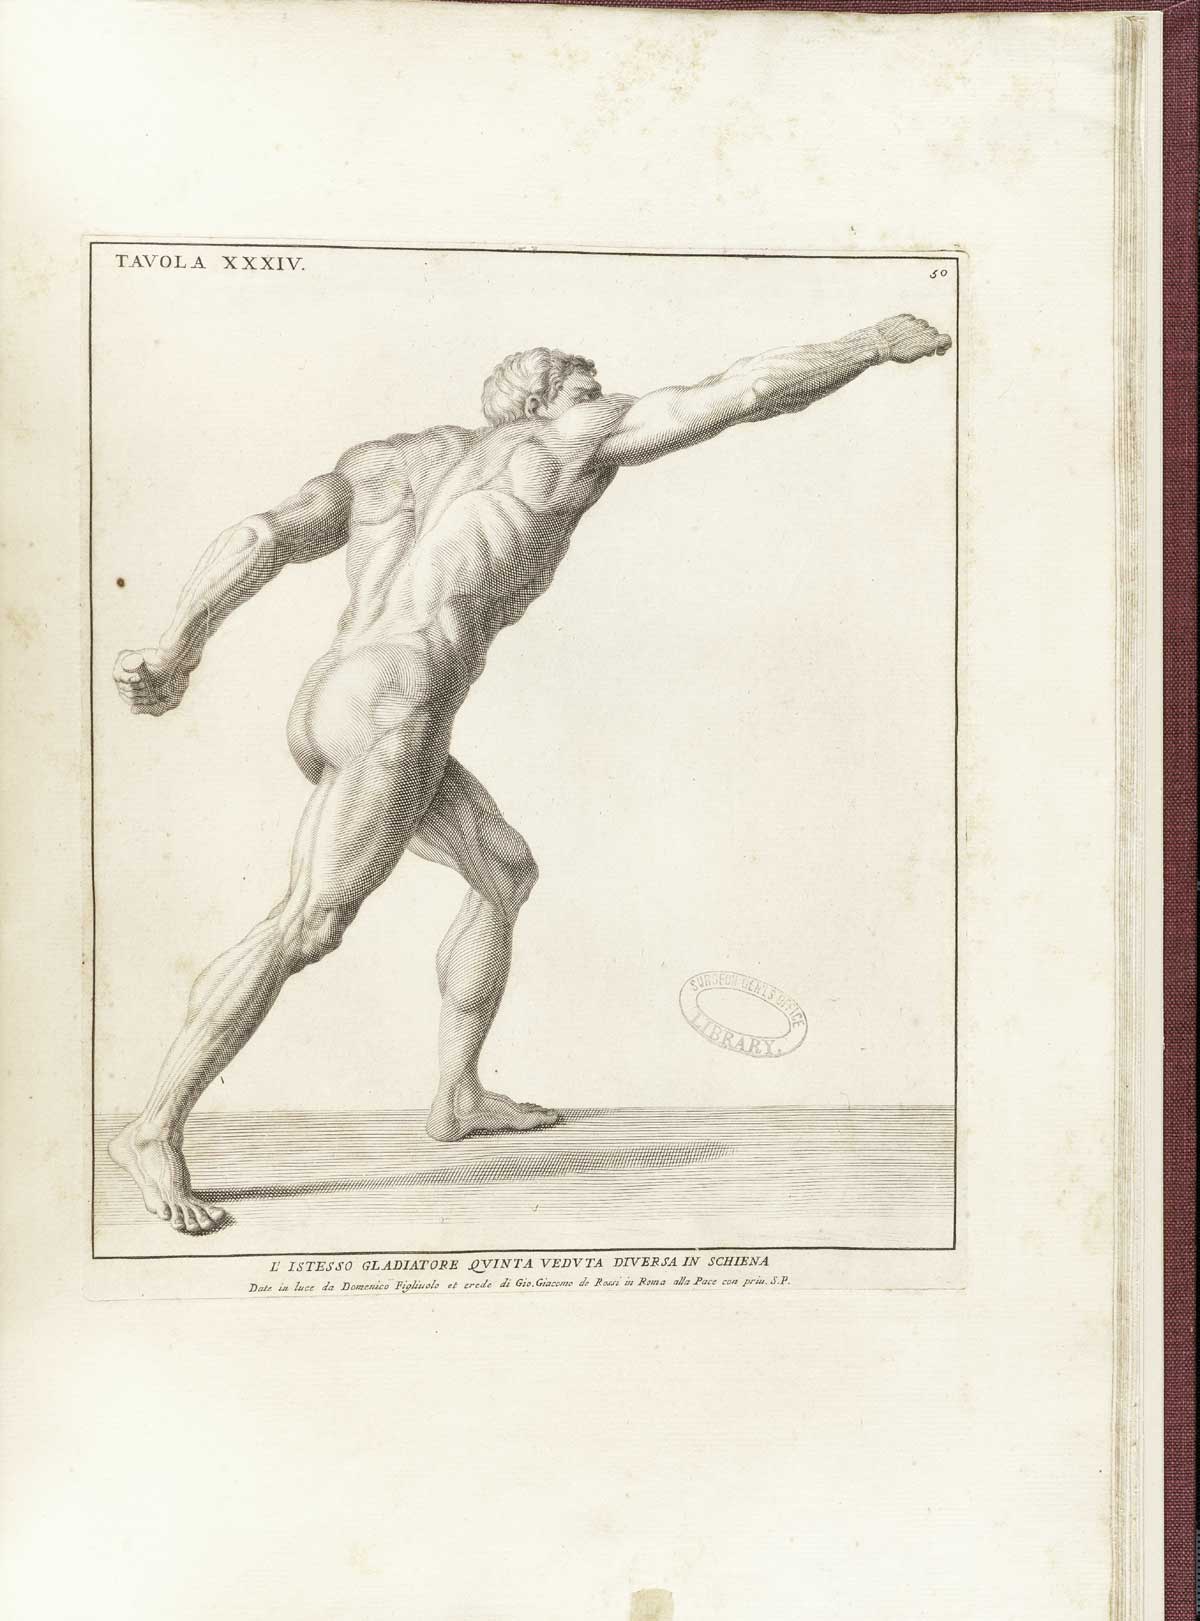 Borghese Gladiator, from Bernardino Genga’s Anatomia per uso et intelligenza del disegno, NLM Call no.: WZ 250 G329an 1691.